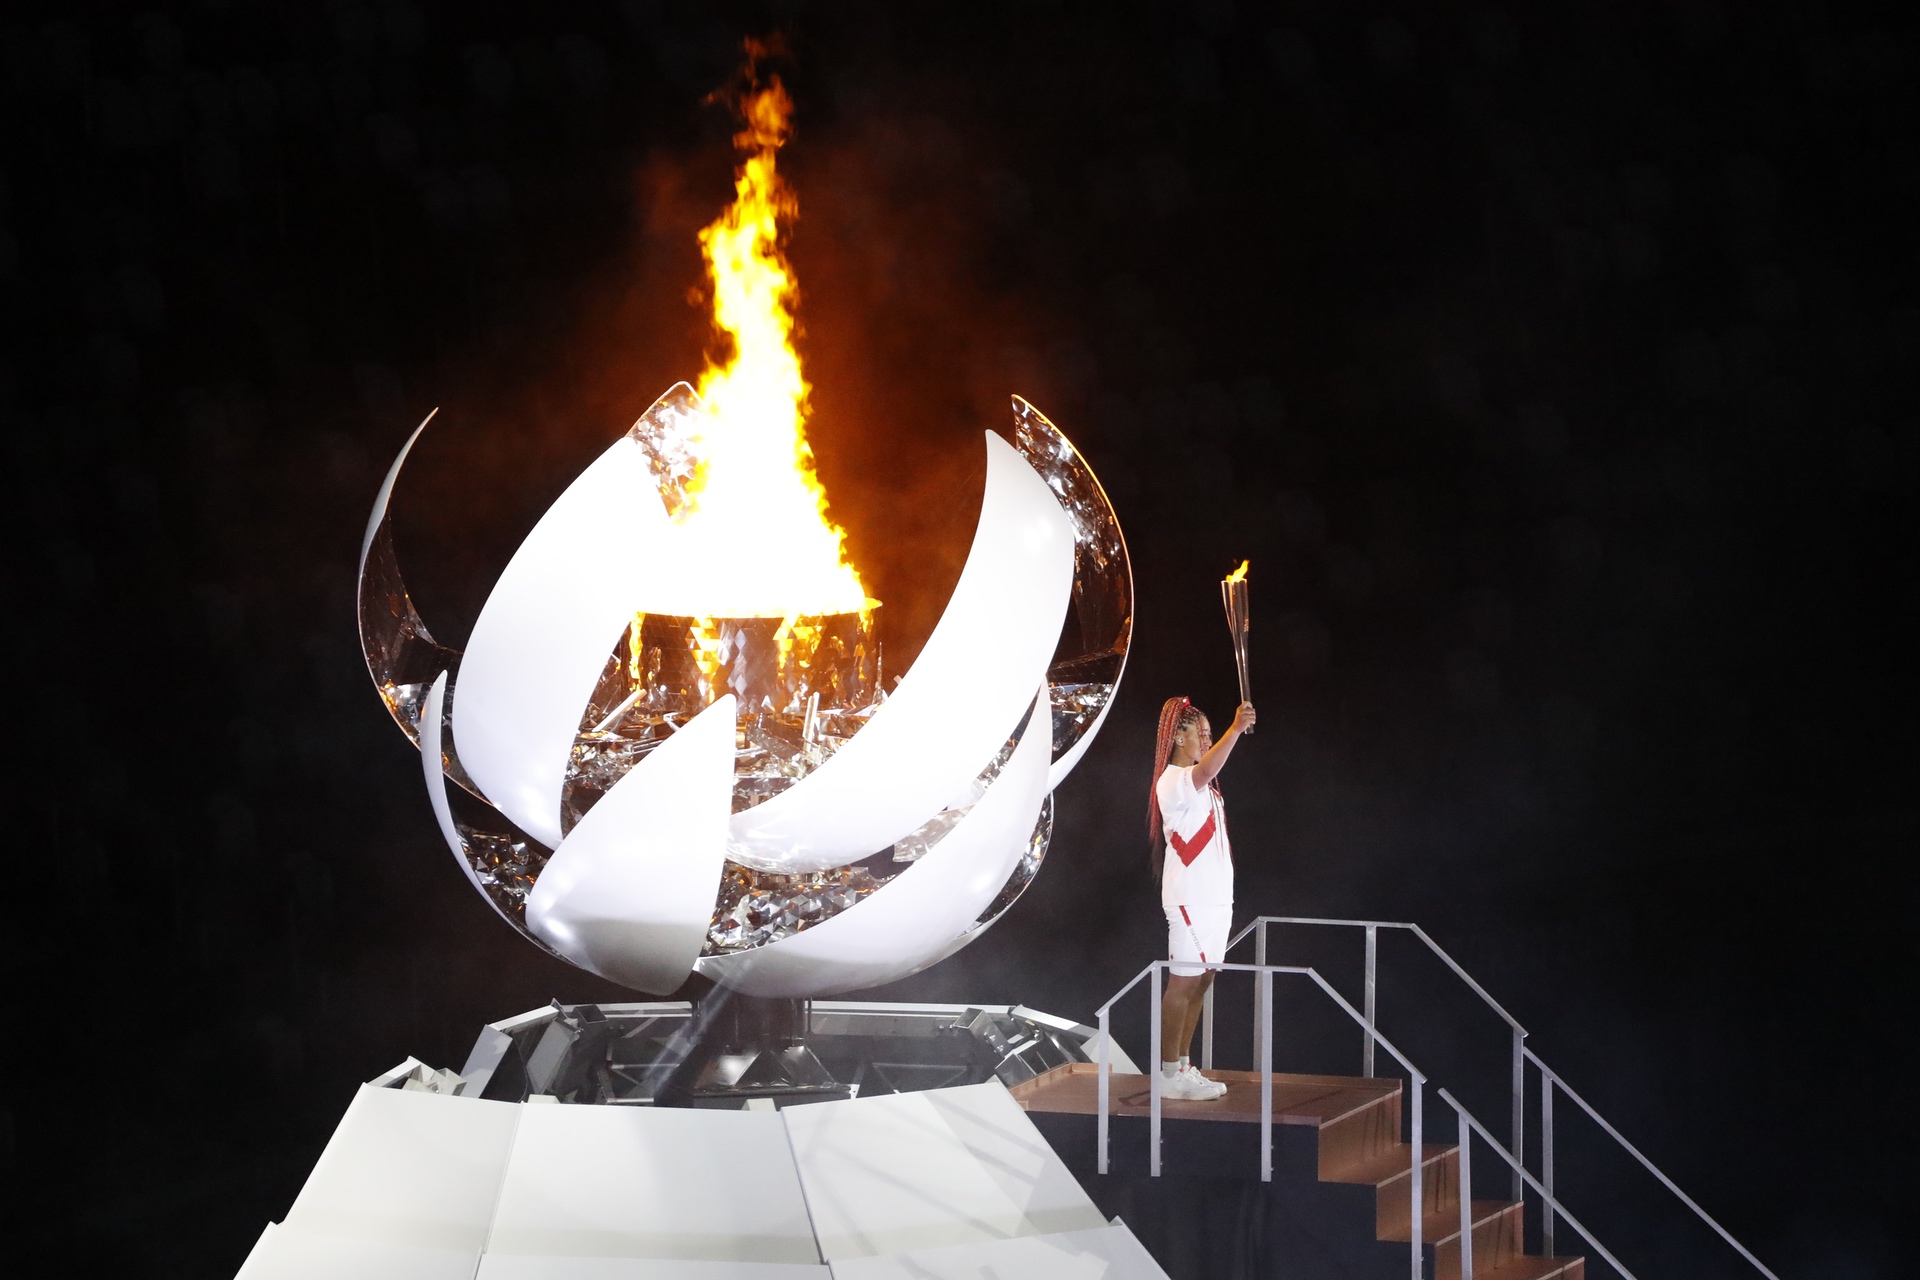 Der Höhepunkt der Eröffnungszeremonie: Naomi Osaka entzündet das Olympische Feuer.